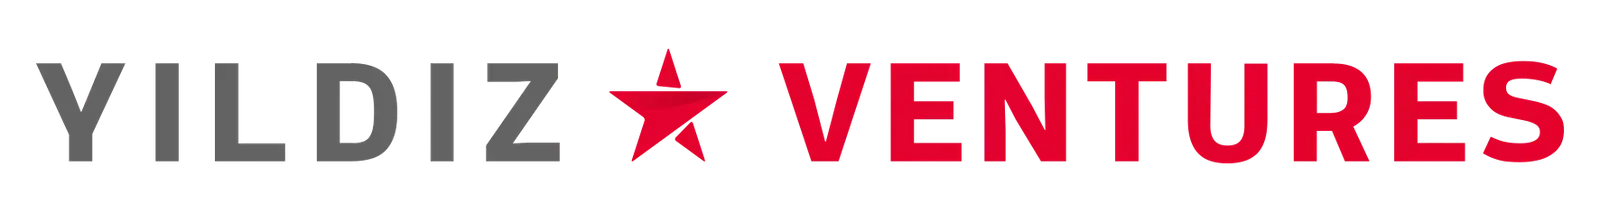 [Case Study] Yıldız Ventures Logo